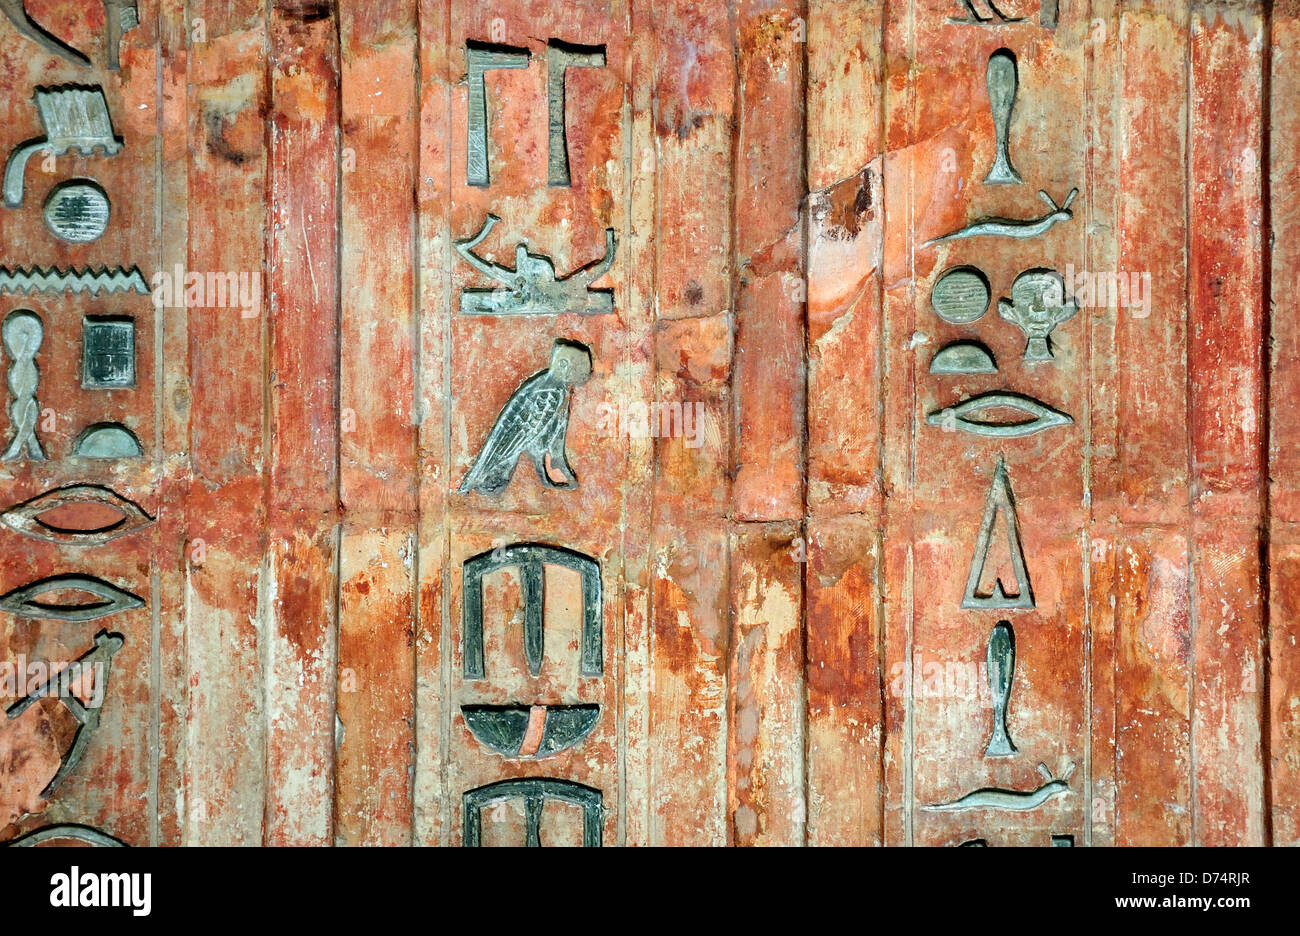 Londra, Inghilterra, Regno Unito. British Museum. Falsa porta alla tomba di Ptahshepses (quinta dinastia, c2400BC) da Giza. Geroglifici Foto Stock